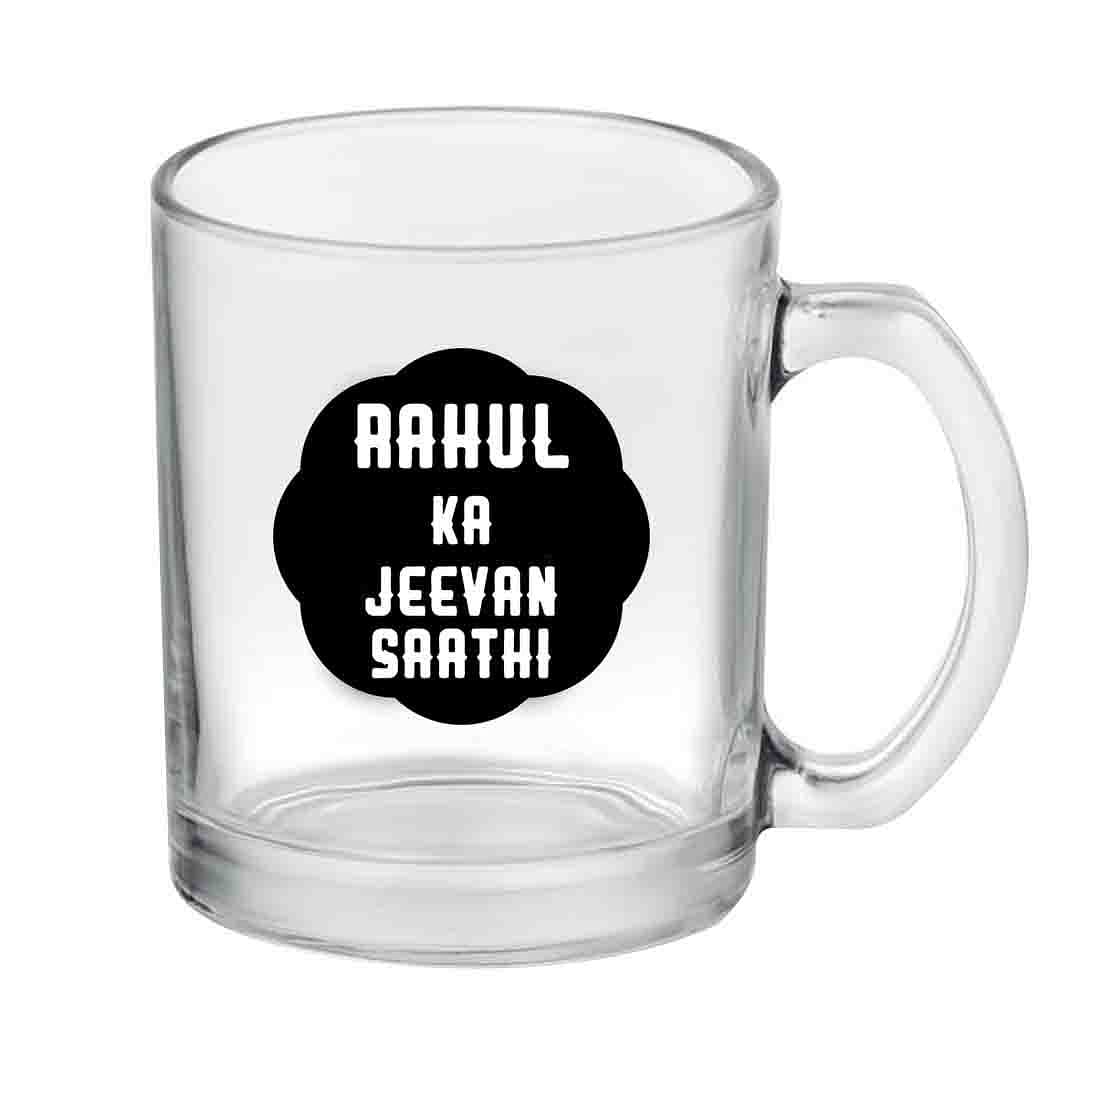 Custom Coffee Tea Mug - Jeevan Sathi Nutcase